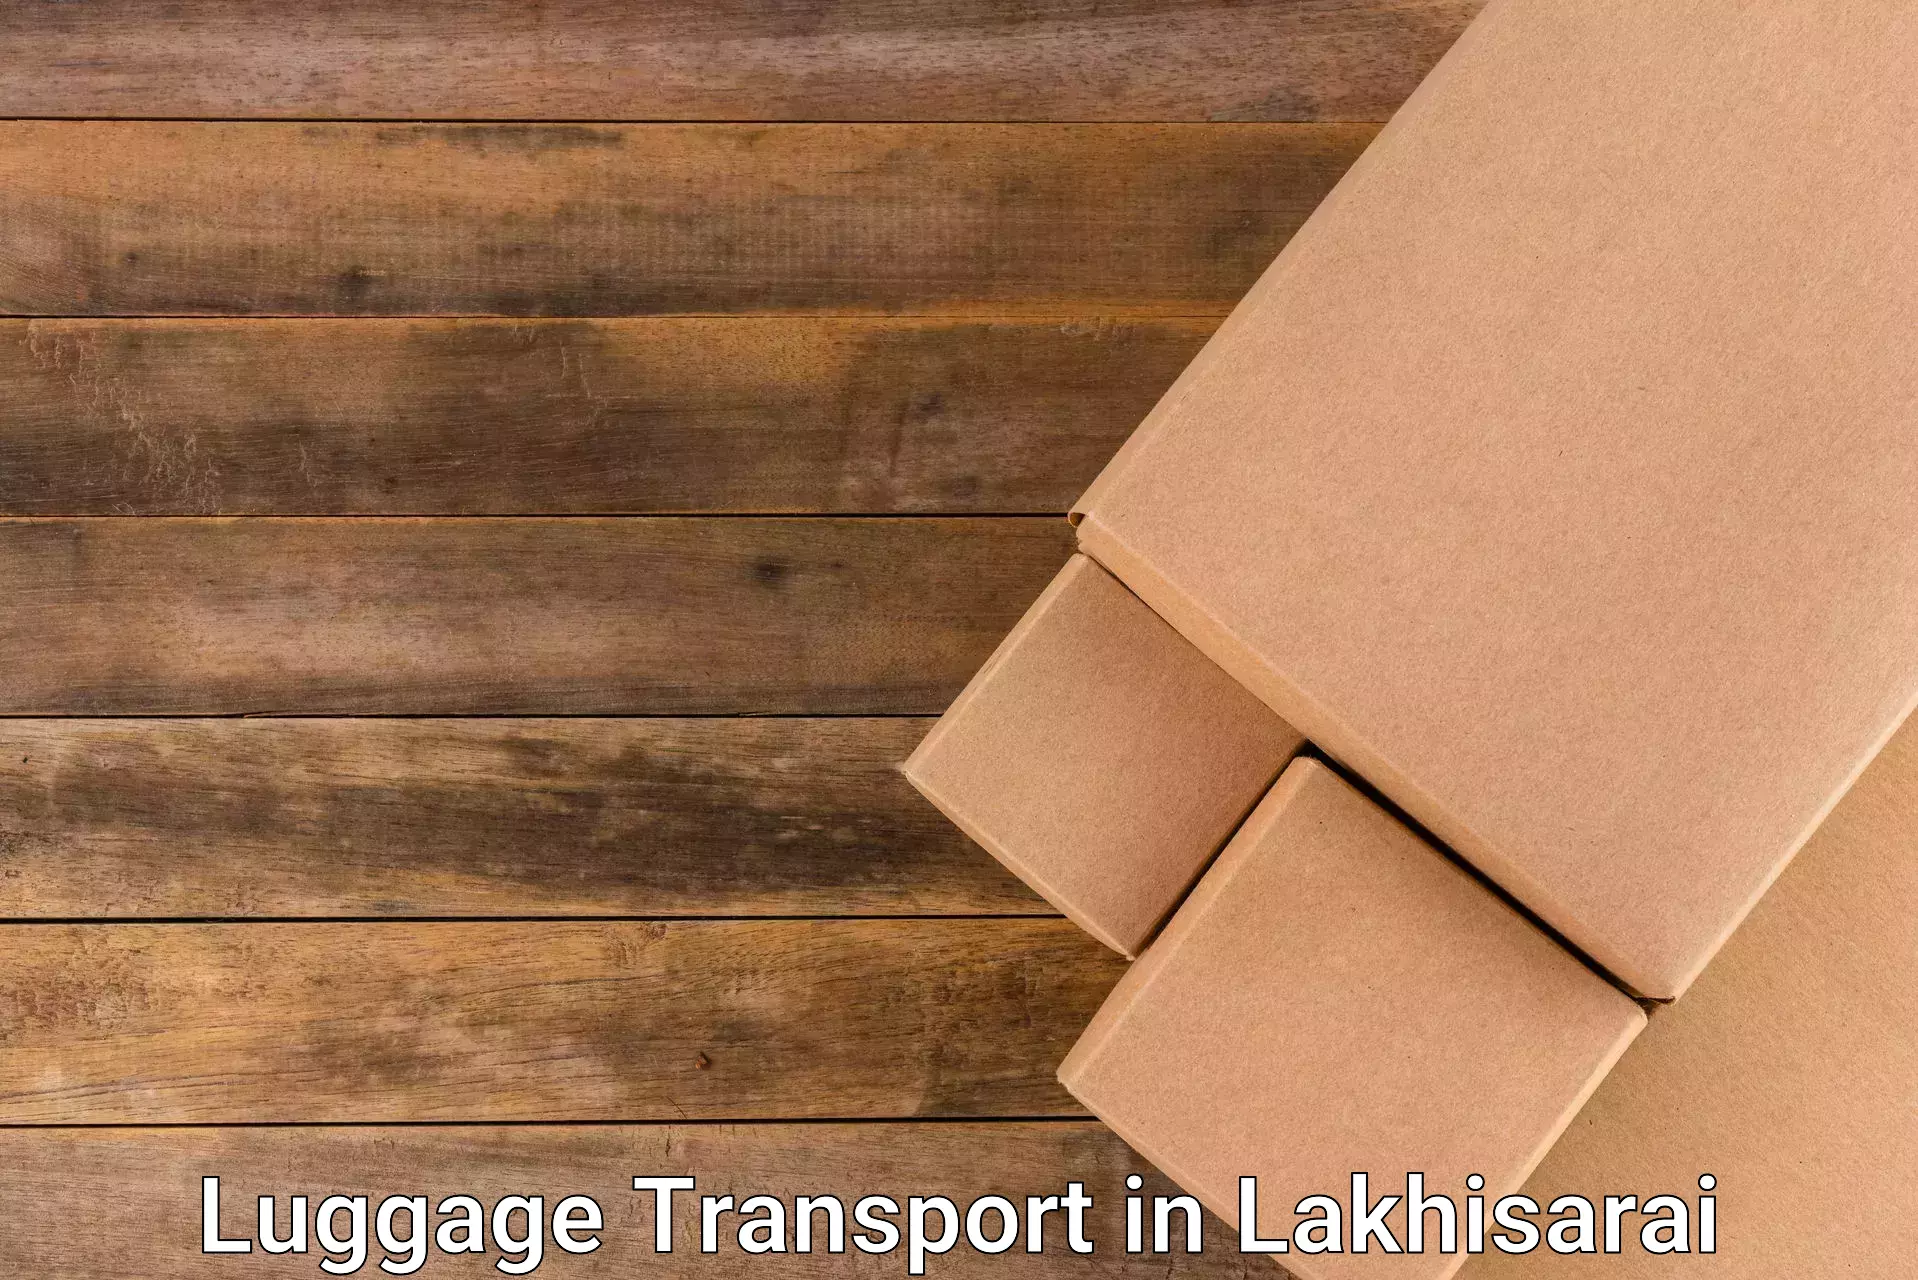 Luggage transport company in Lakhisarai